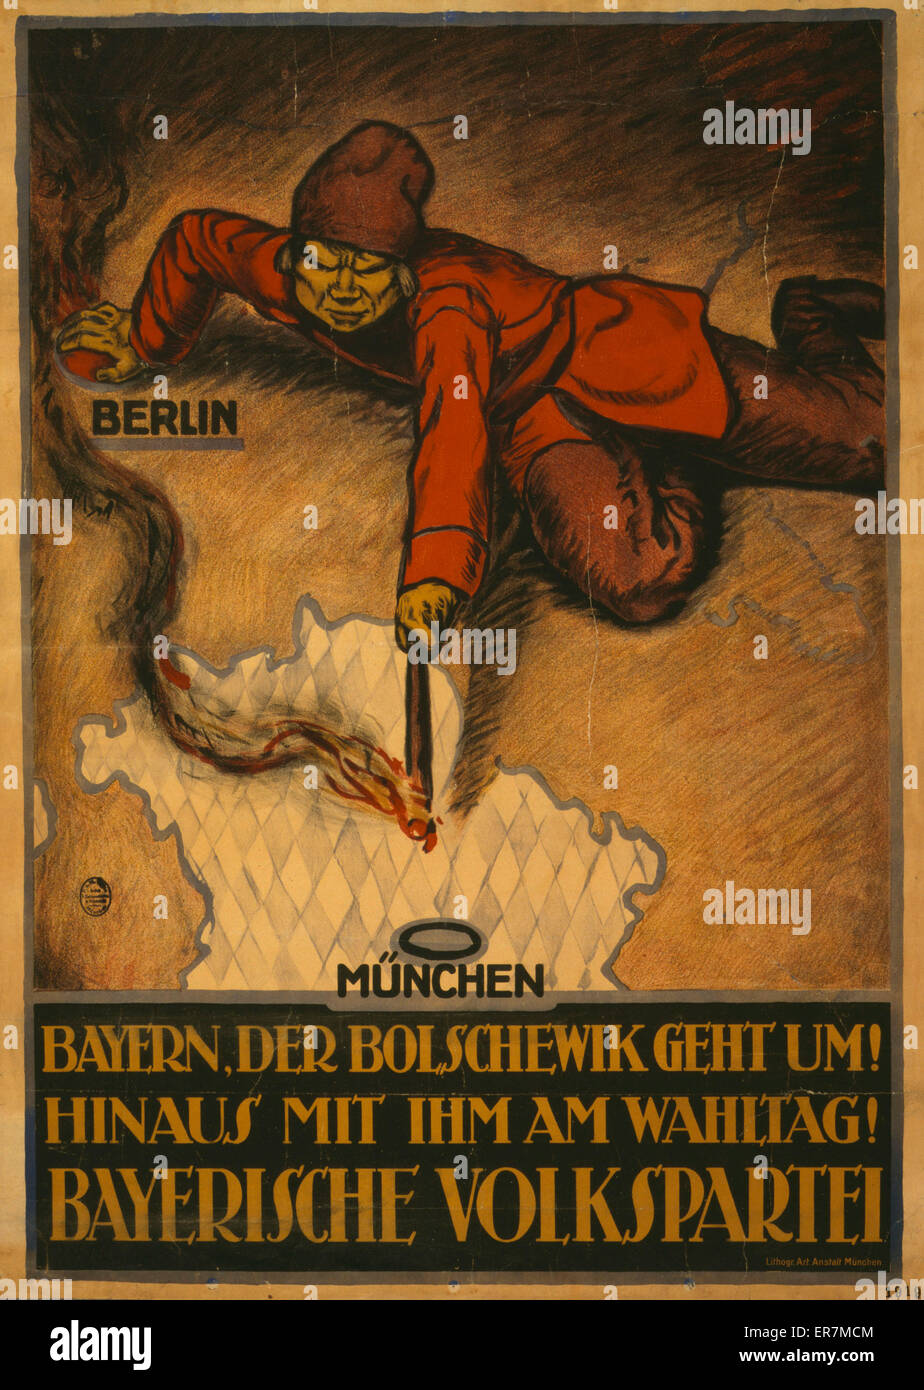 Bayern, der Bolshewik geht um! Hinaus mit ihm am Wahltag! Stock Photo